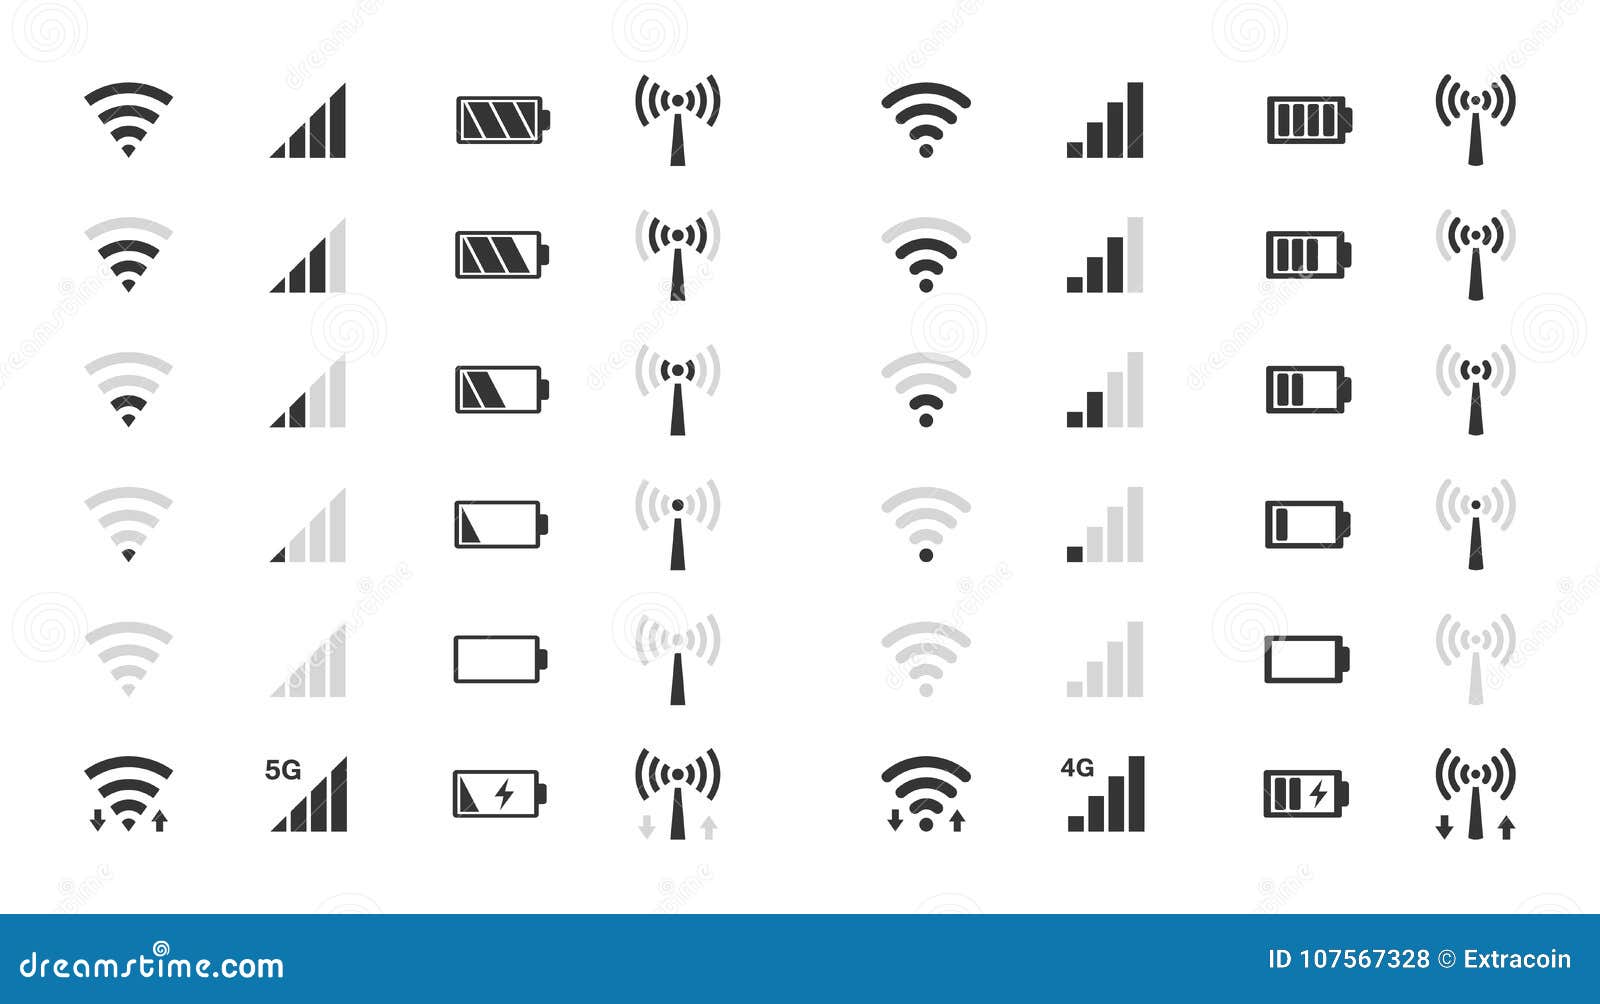 Значки на экране мобильного. Индикатор вай фай сигнала. WIFI сигнал индикатор. Значки уровень сигнала Wi-Fi. Иконки уровня сигнала вай фай.